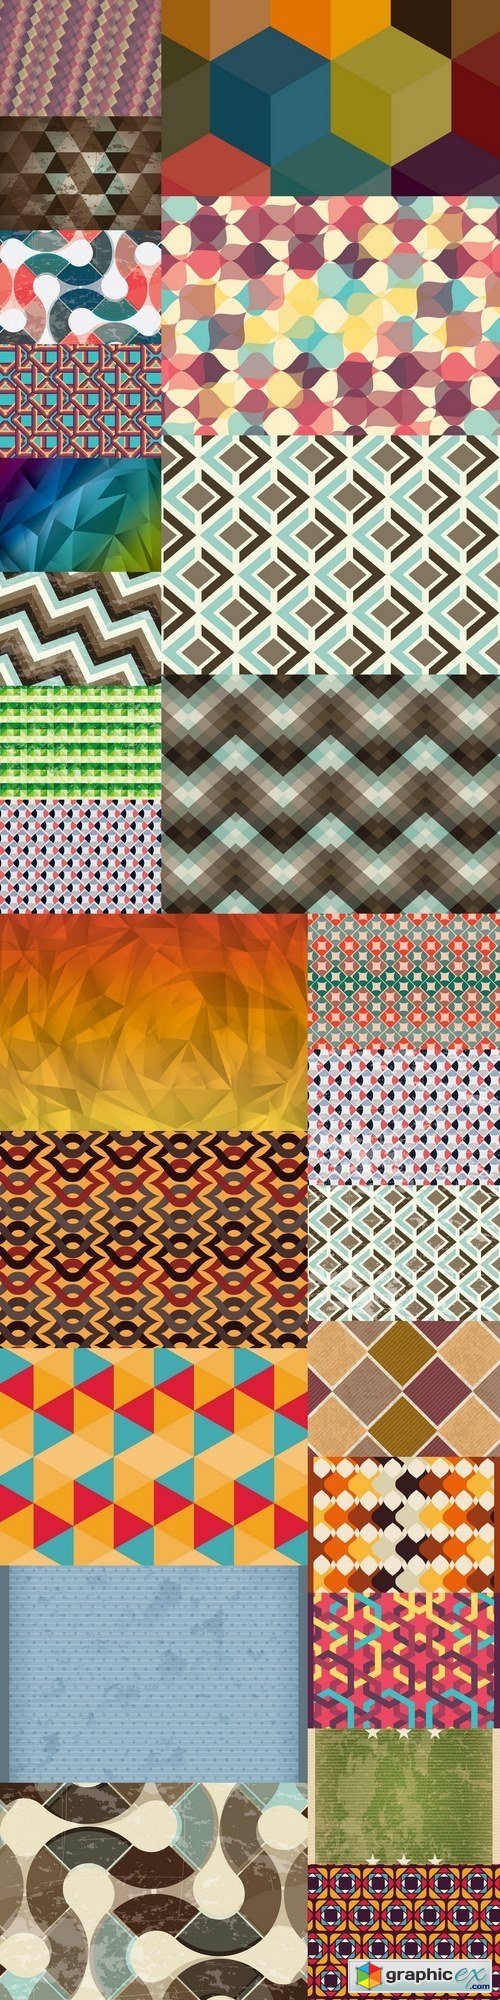 Pattern background design 3